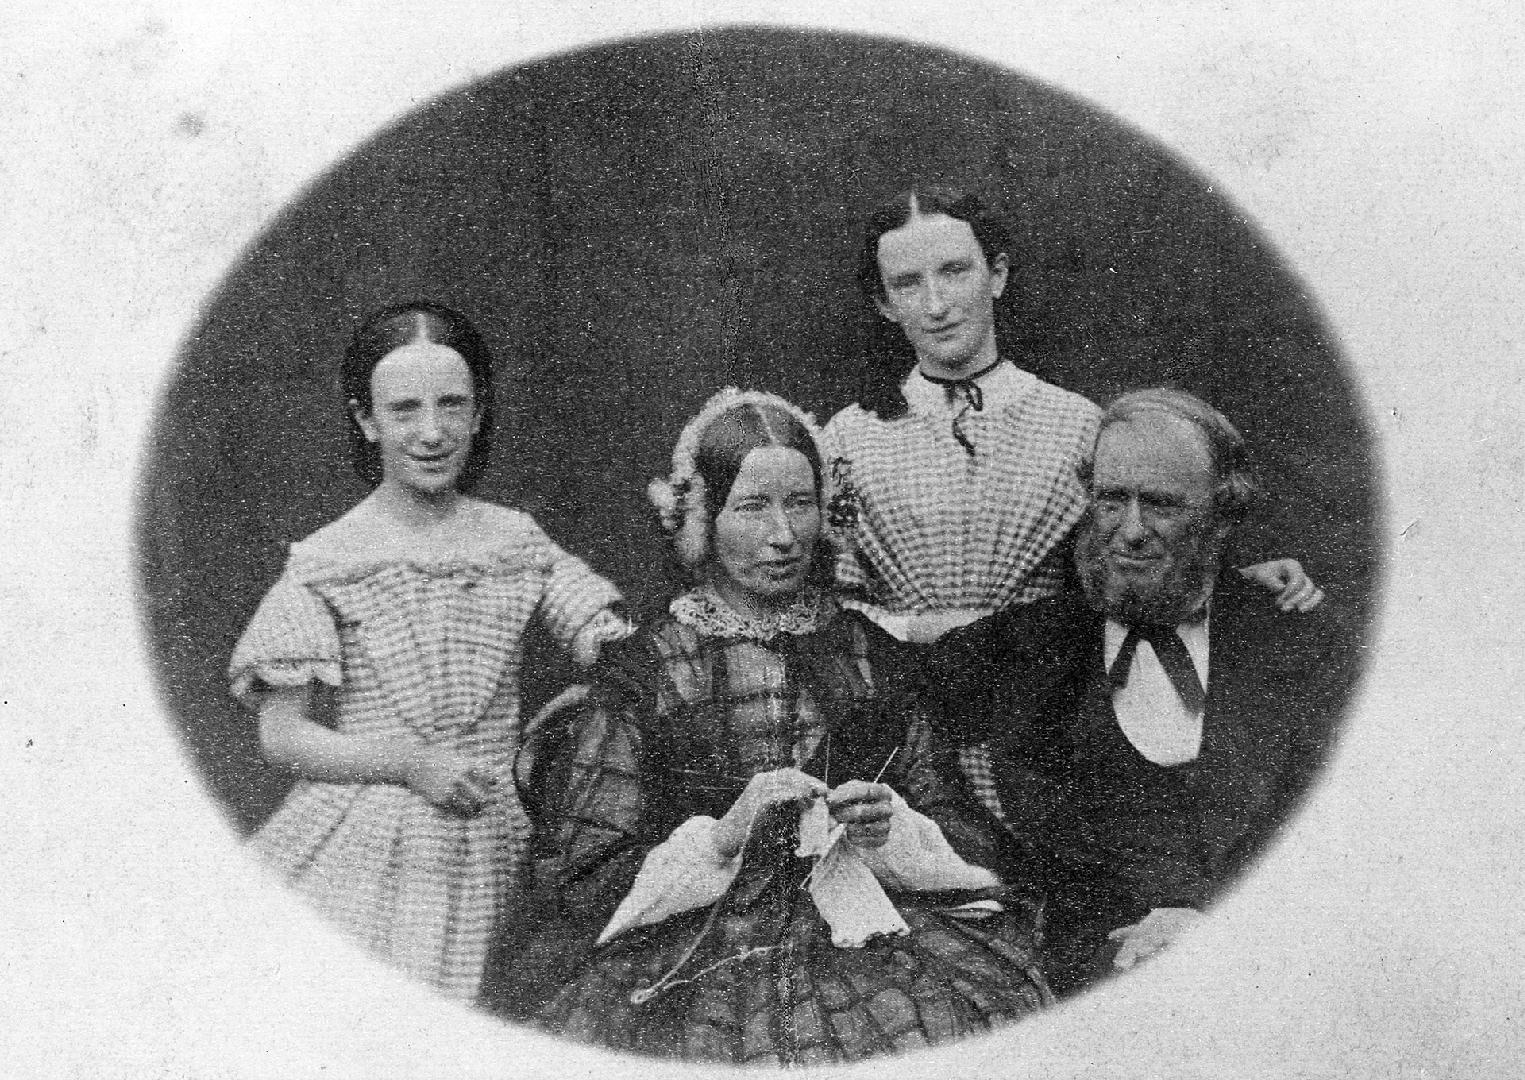 Joyce Family (circa 1860)